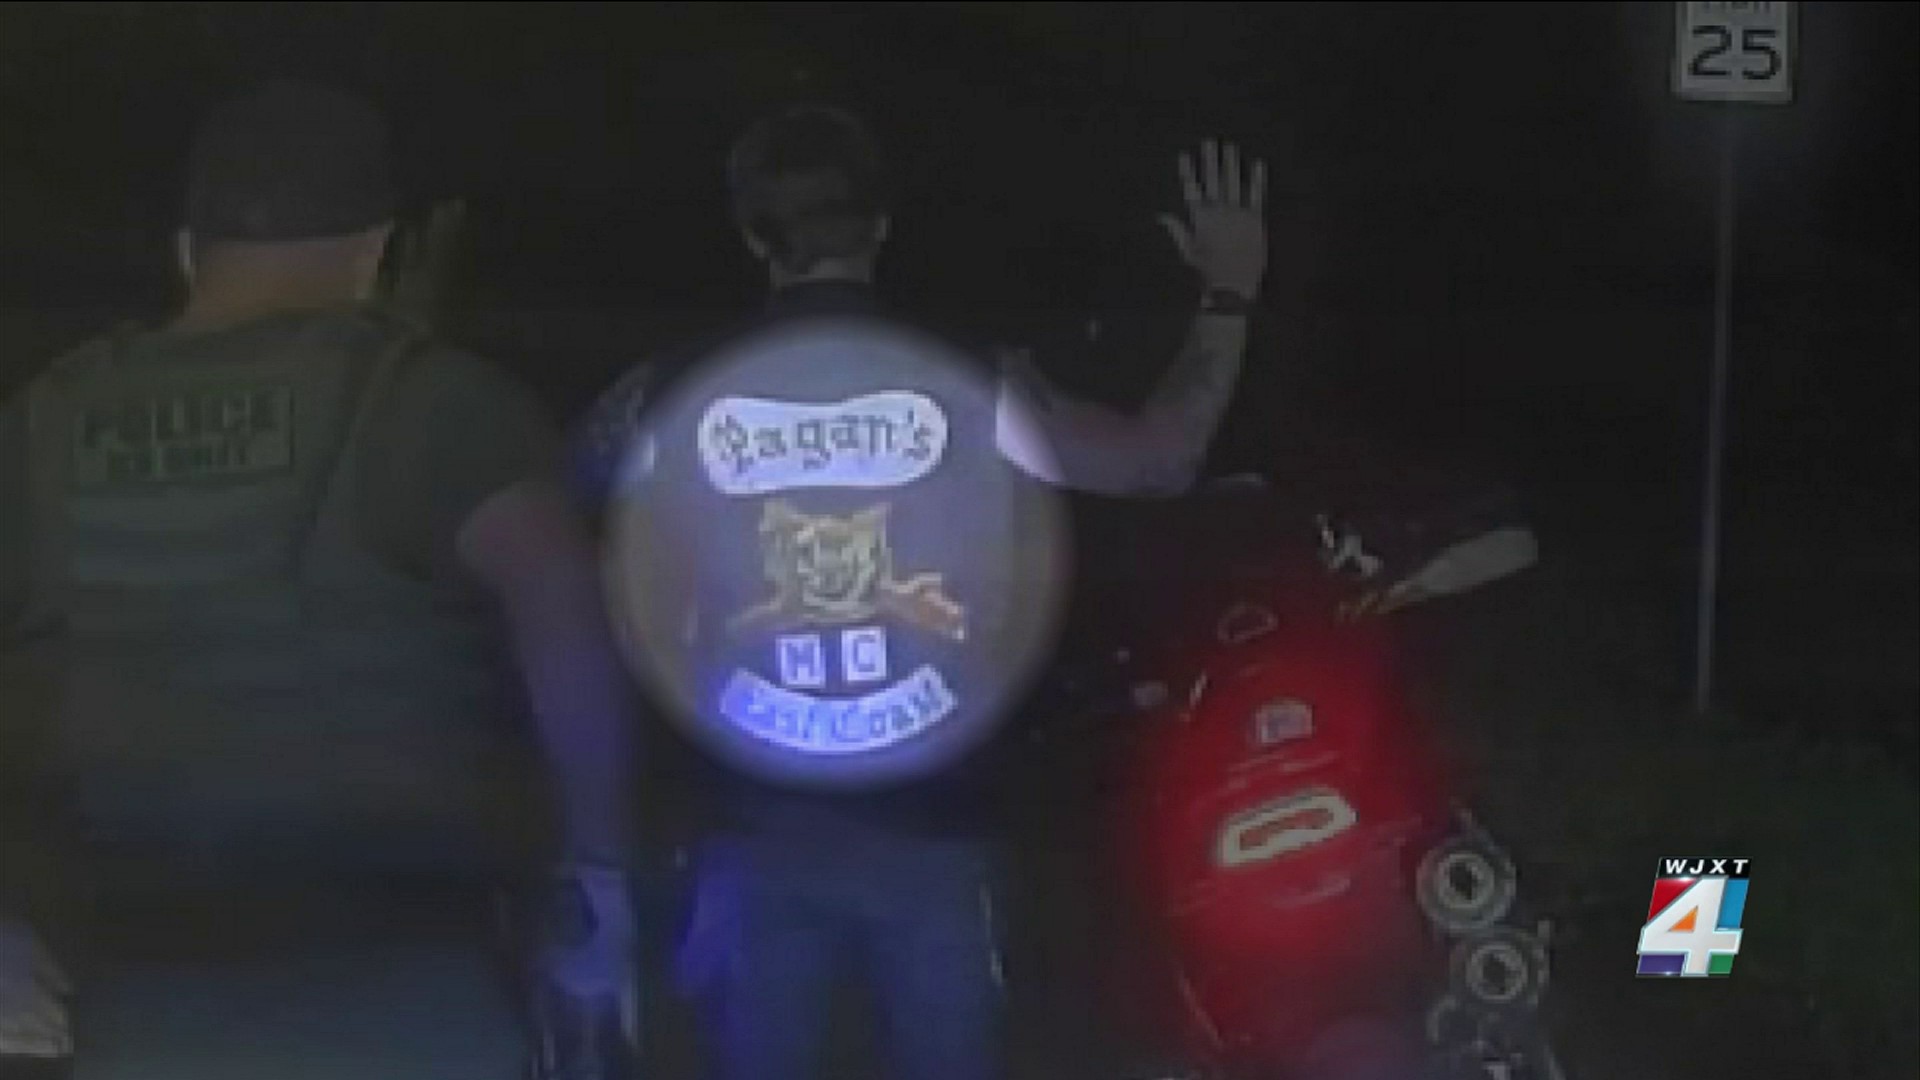 pagan motorcycle gang logo